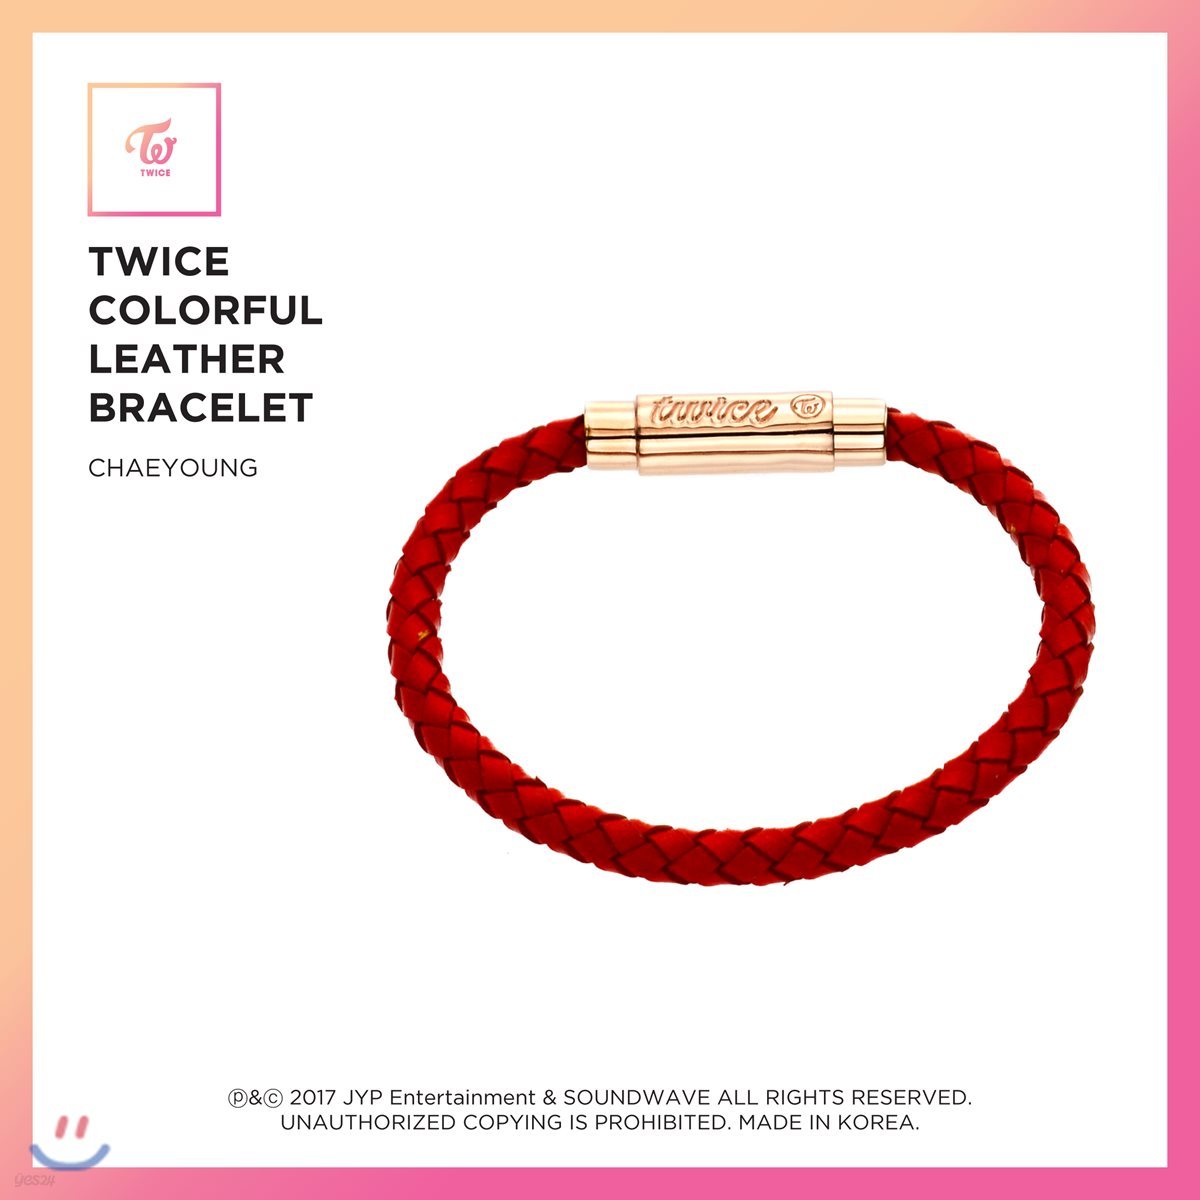 트와이스 (TWICE) - TWICE Colorful Leather Bracelet [Chaeyoung]